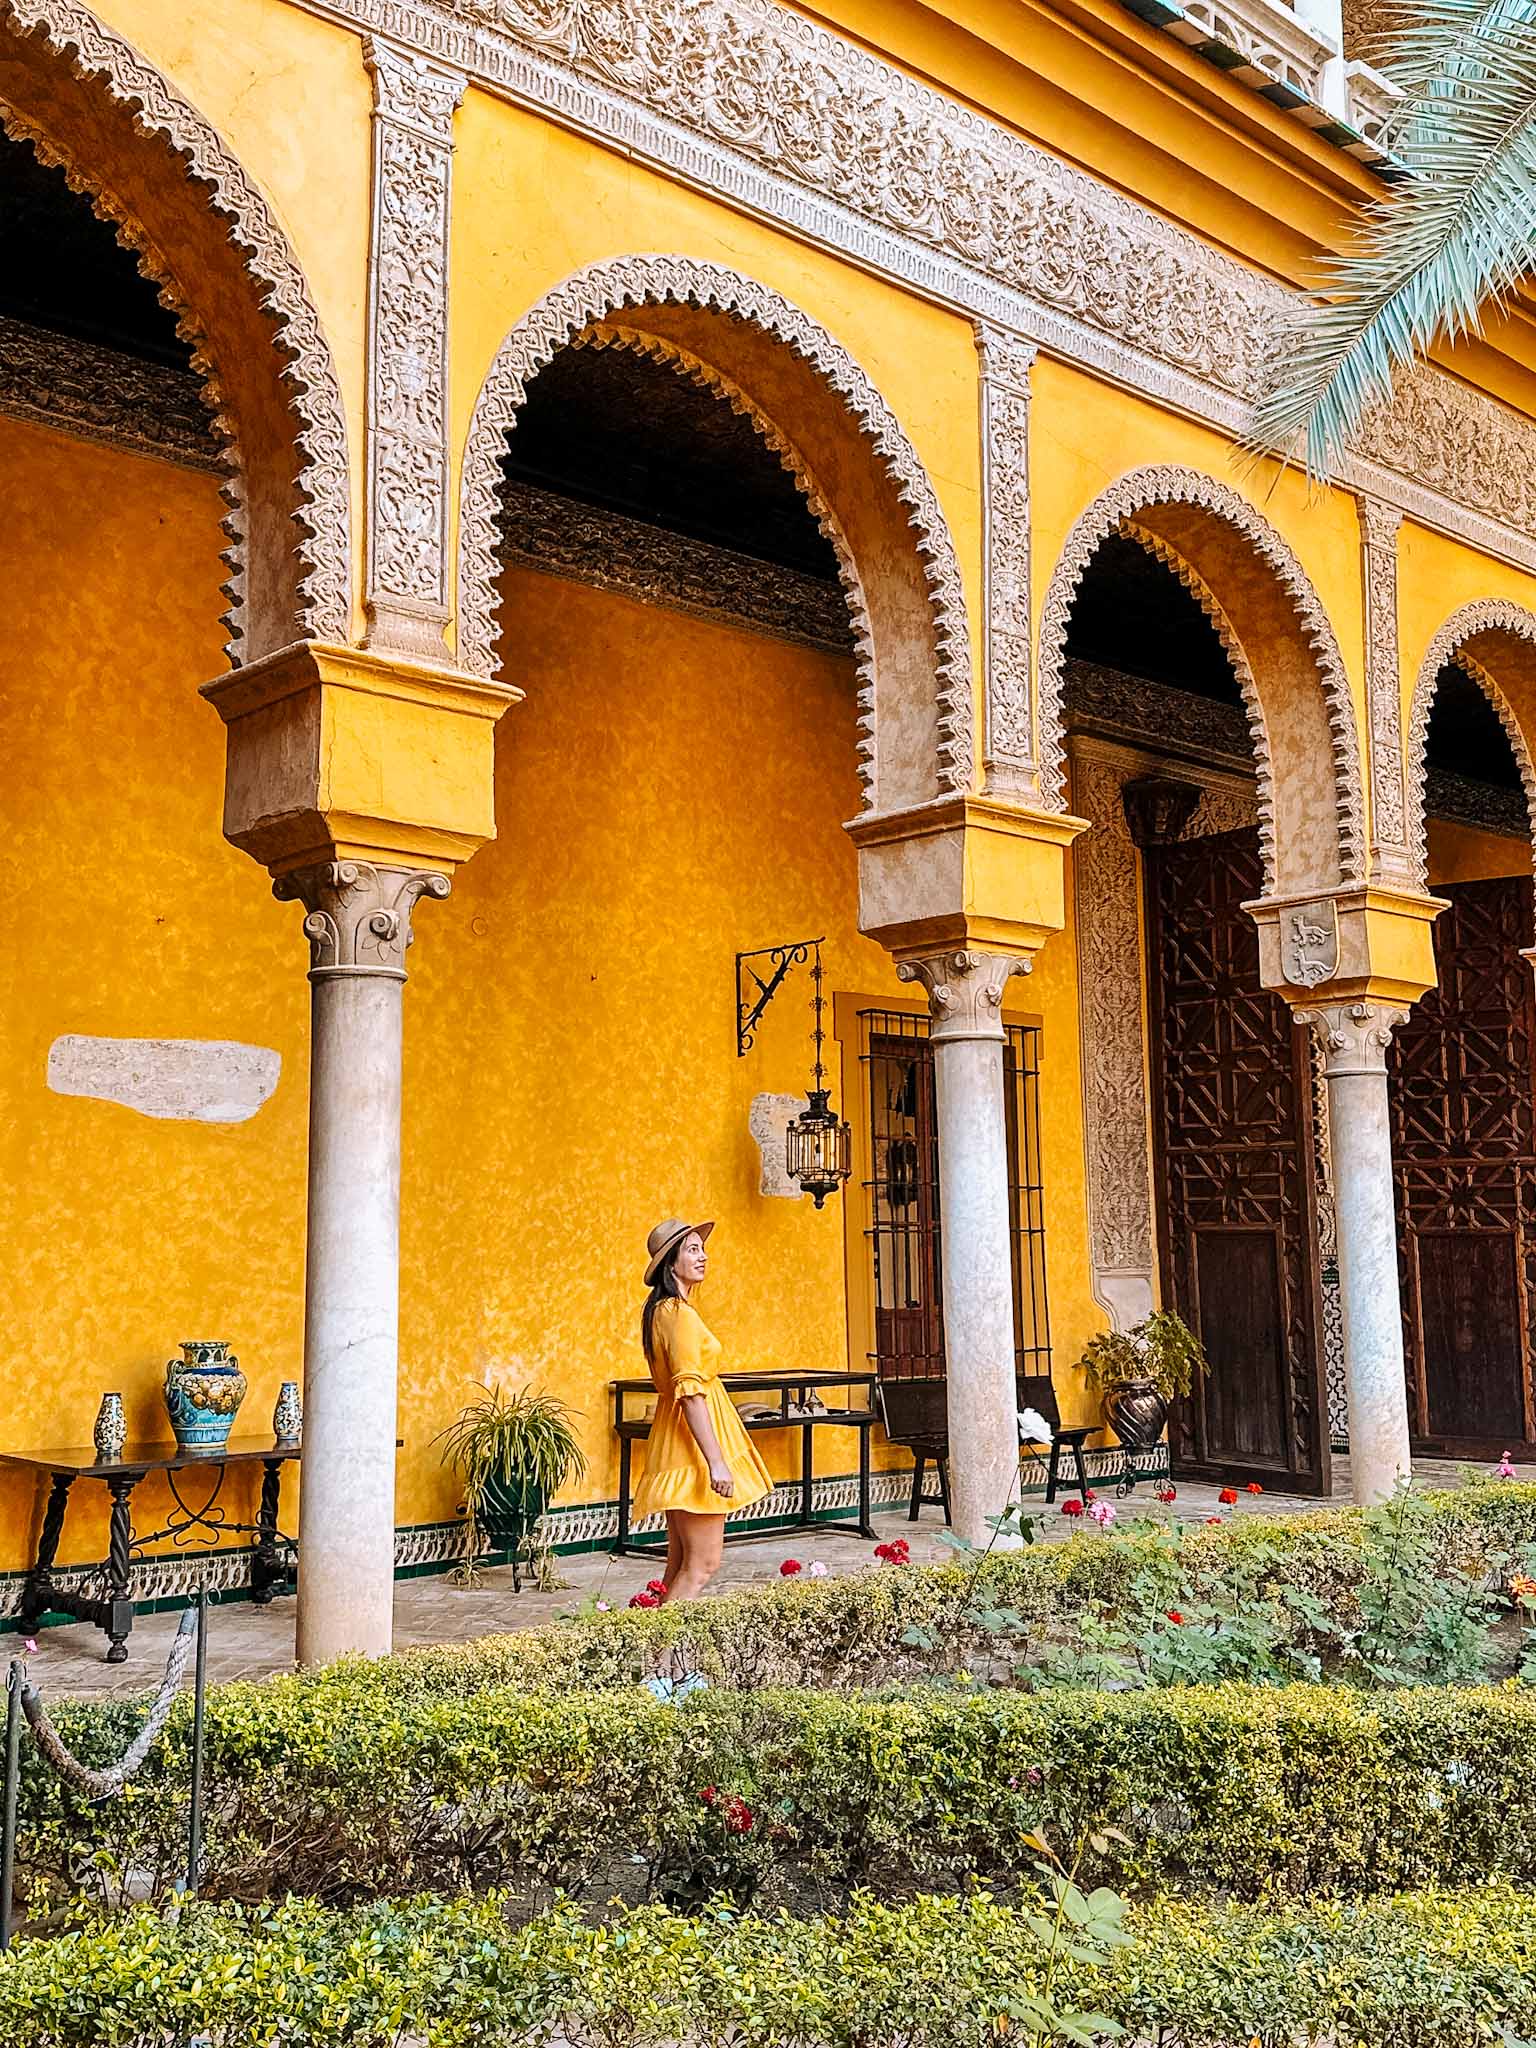 Best Instagram spots in Seville city in Spain